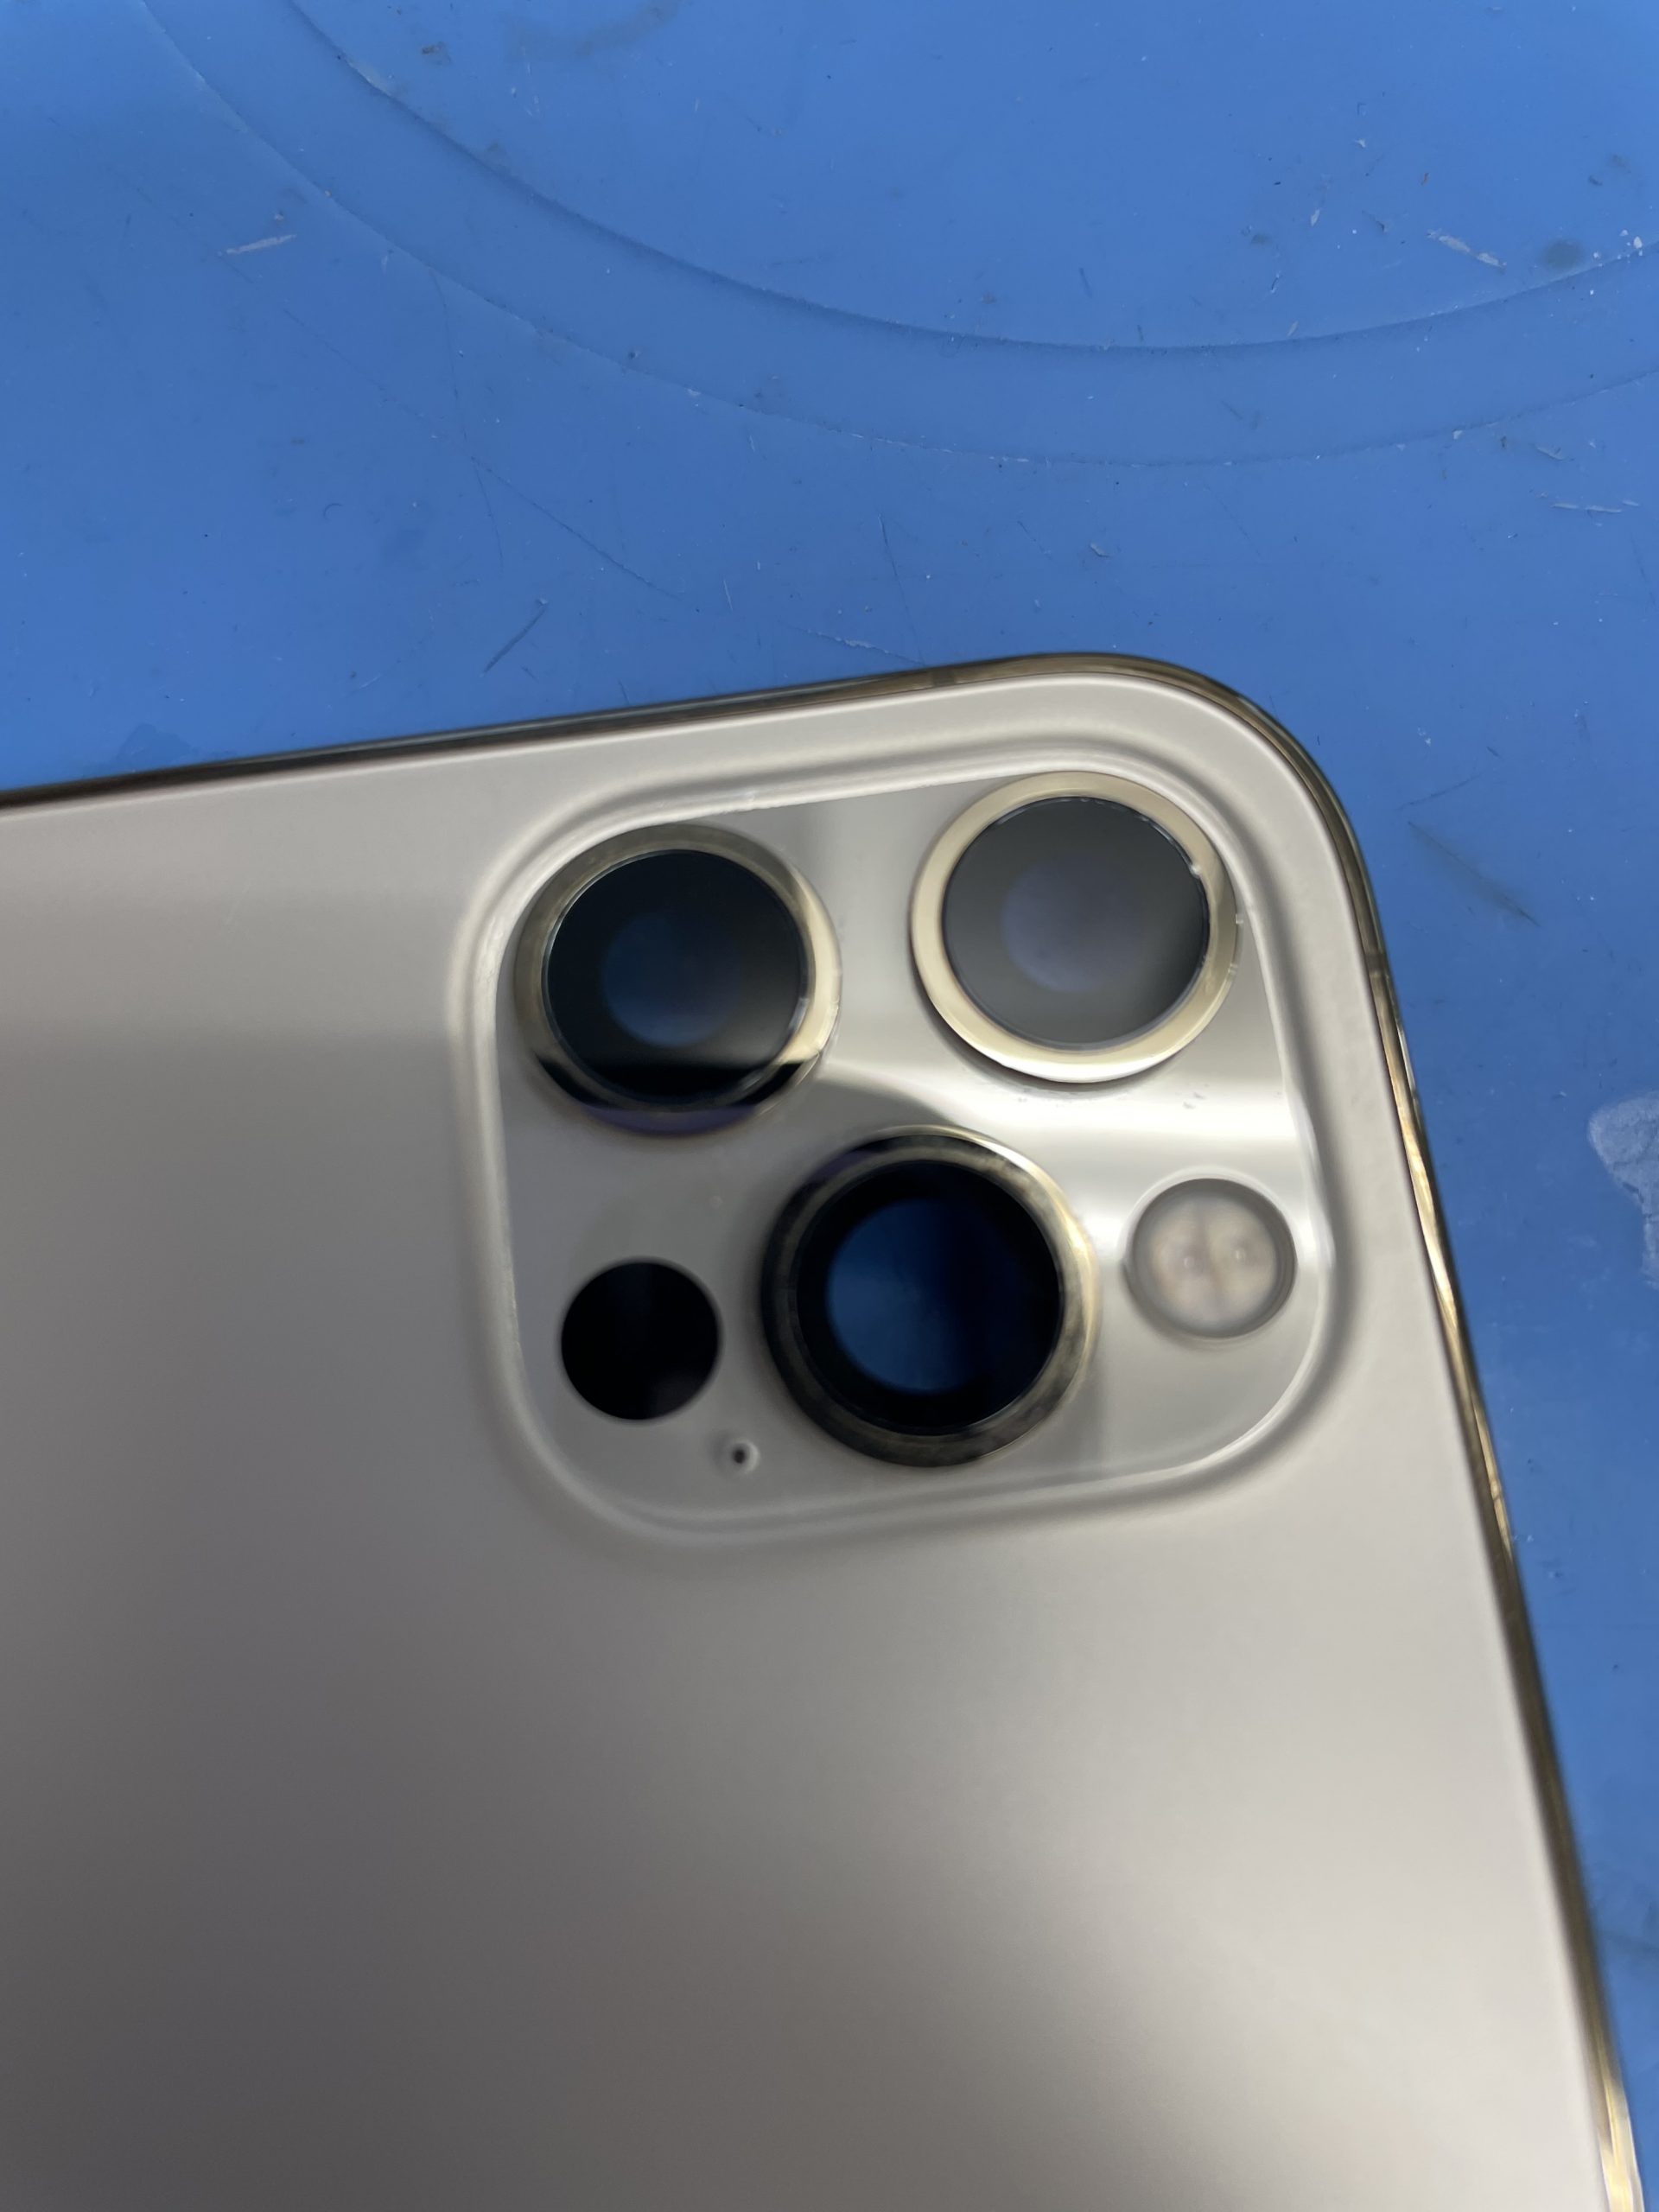 iPhoneのアウトカメラレンズの割れは早めの修理を。